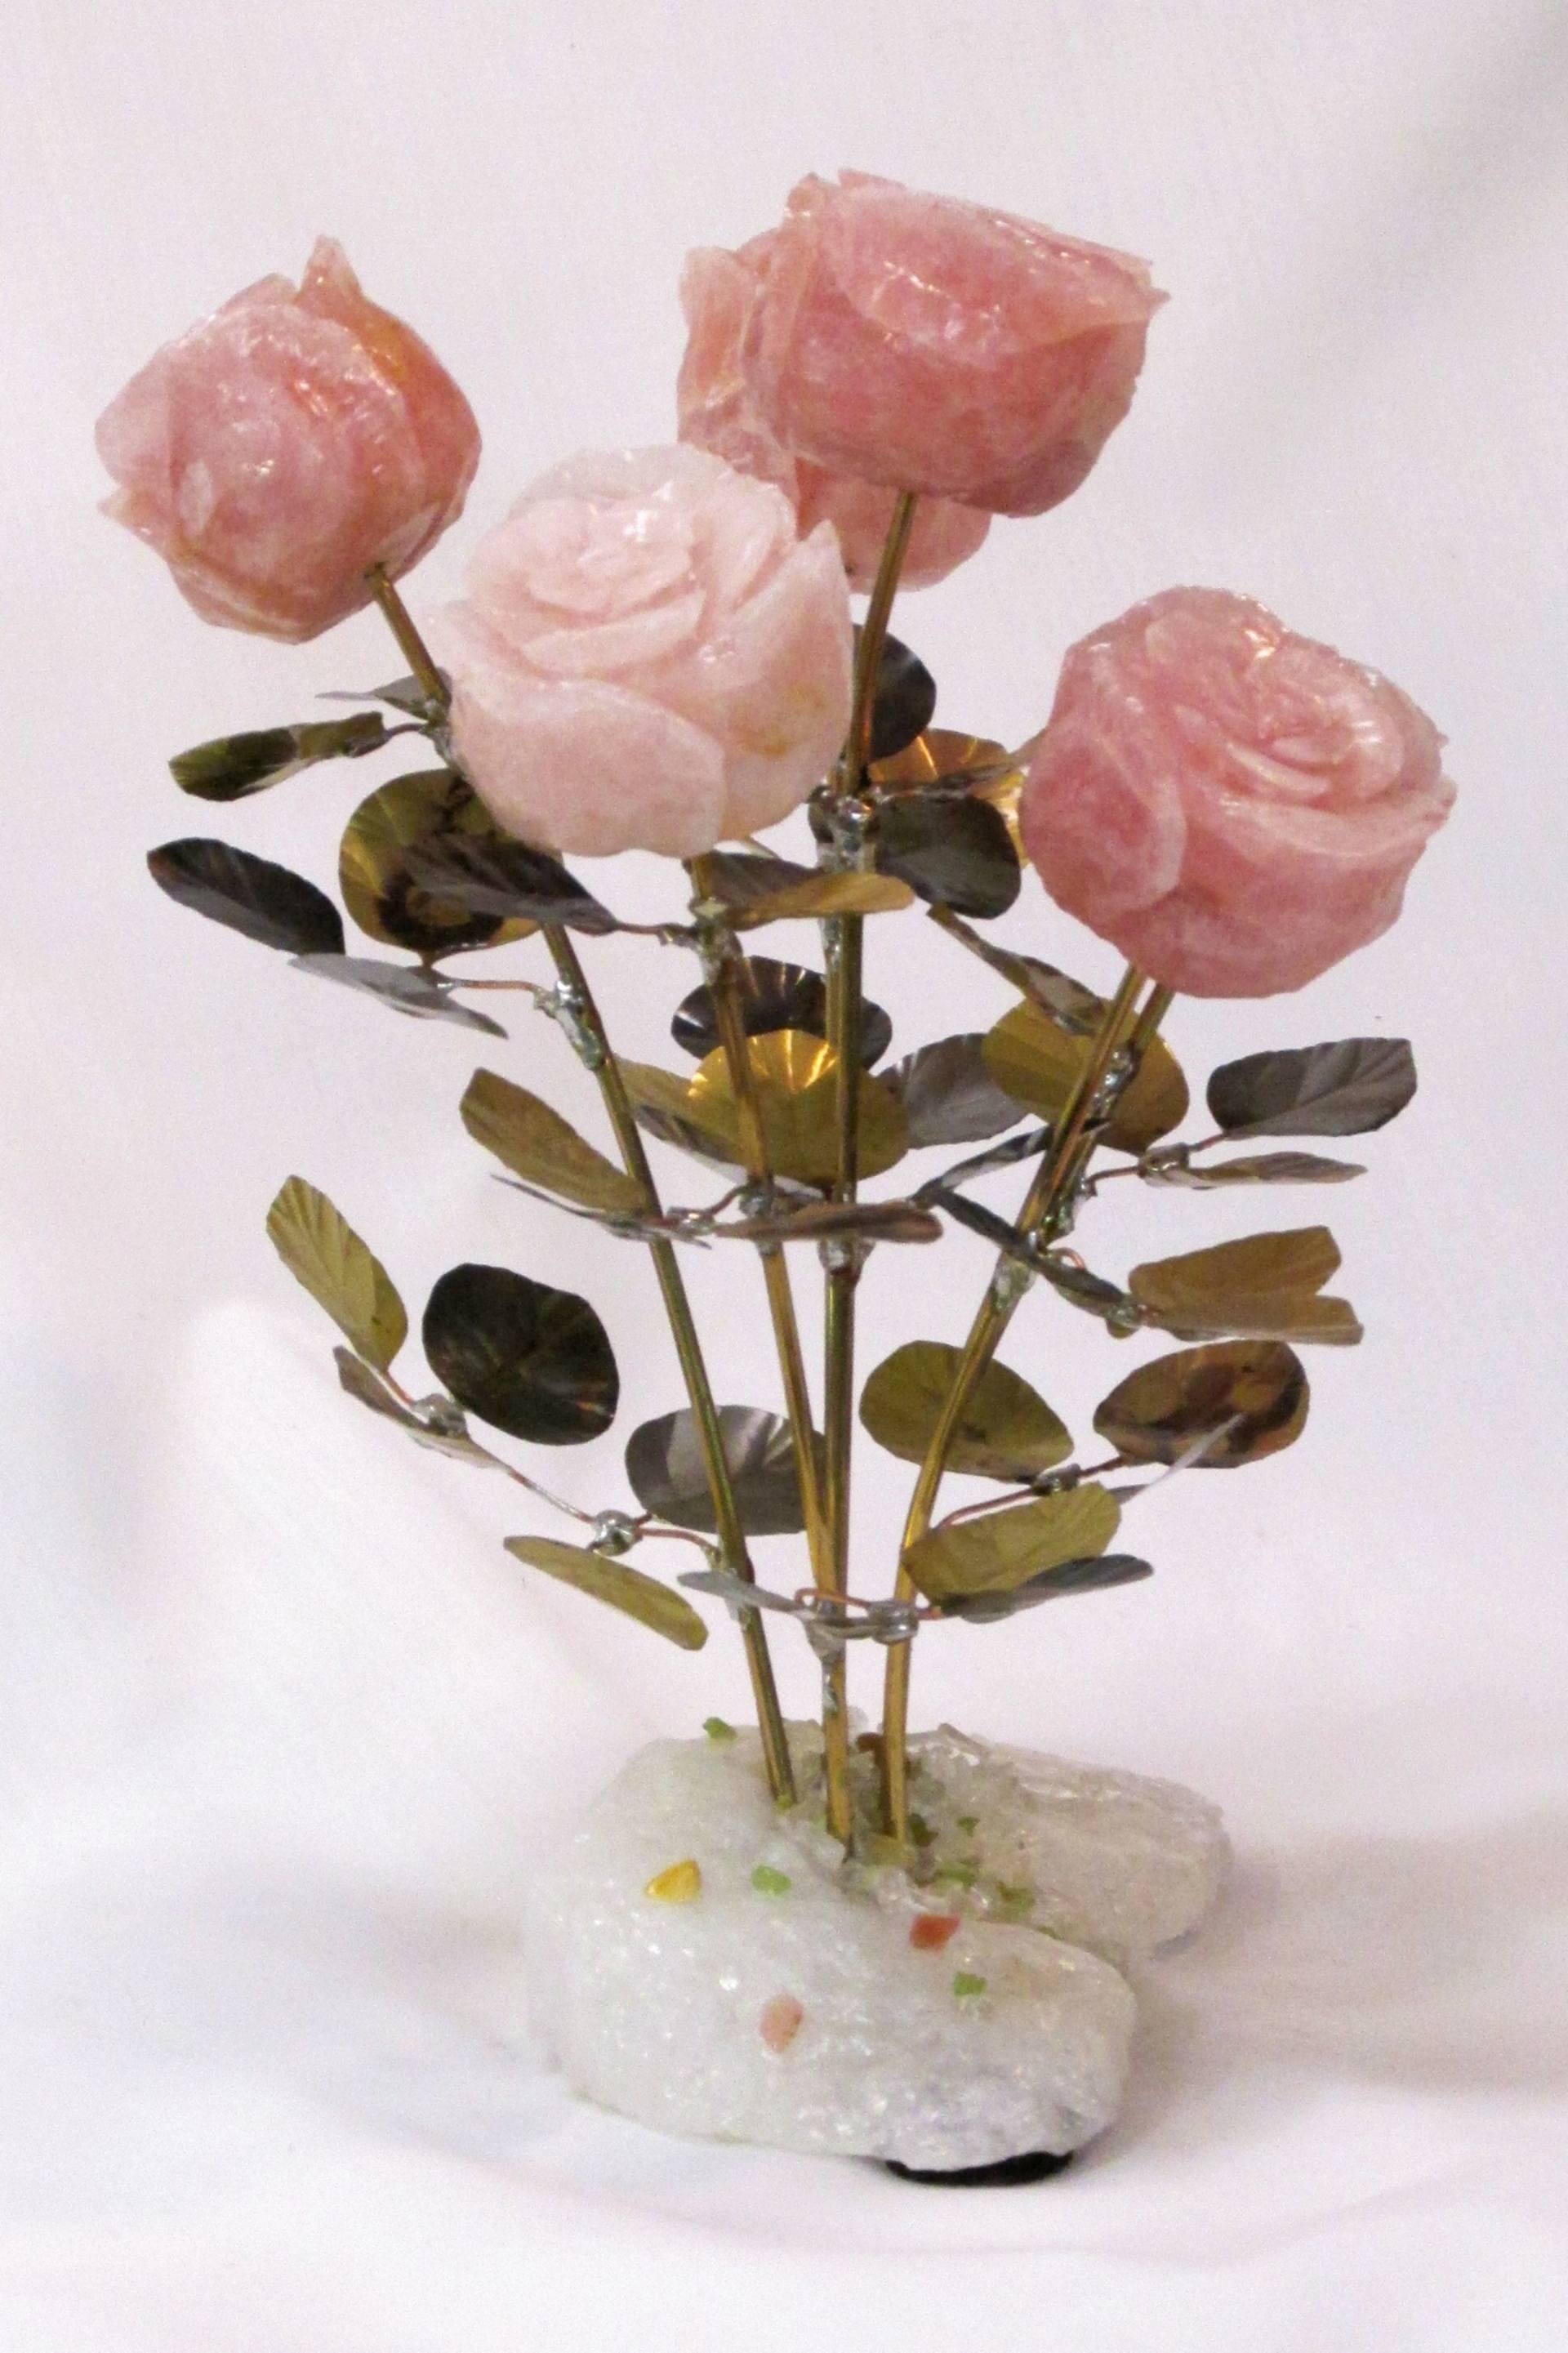 Saatchi Art: Half Dozen Rose Quartz Stone Flower Sculpture No. 6-1 ...